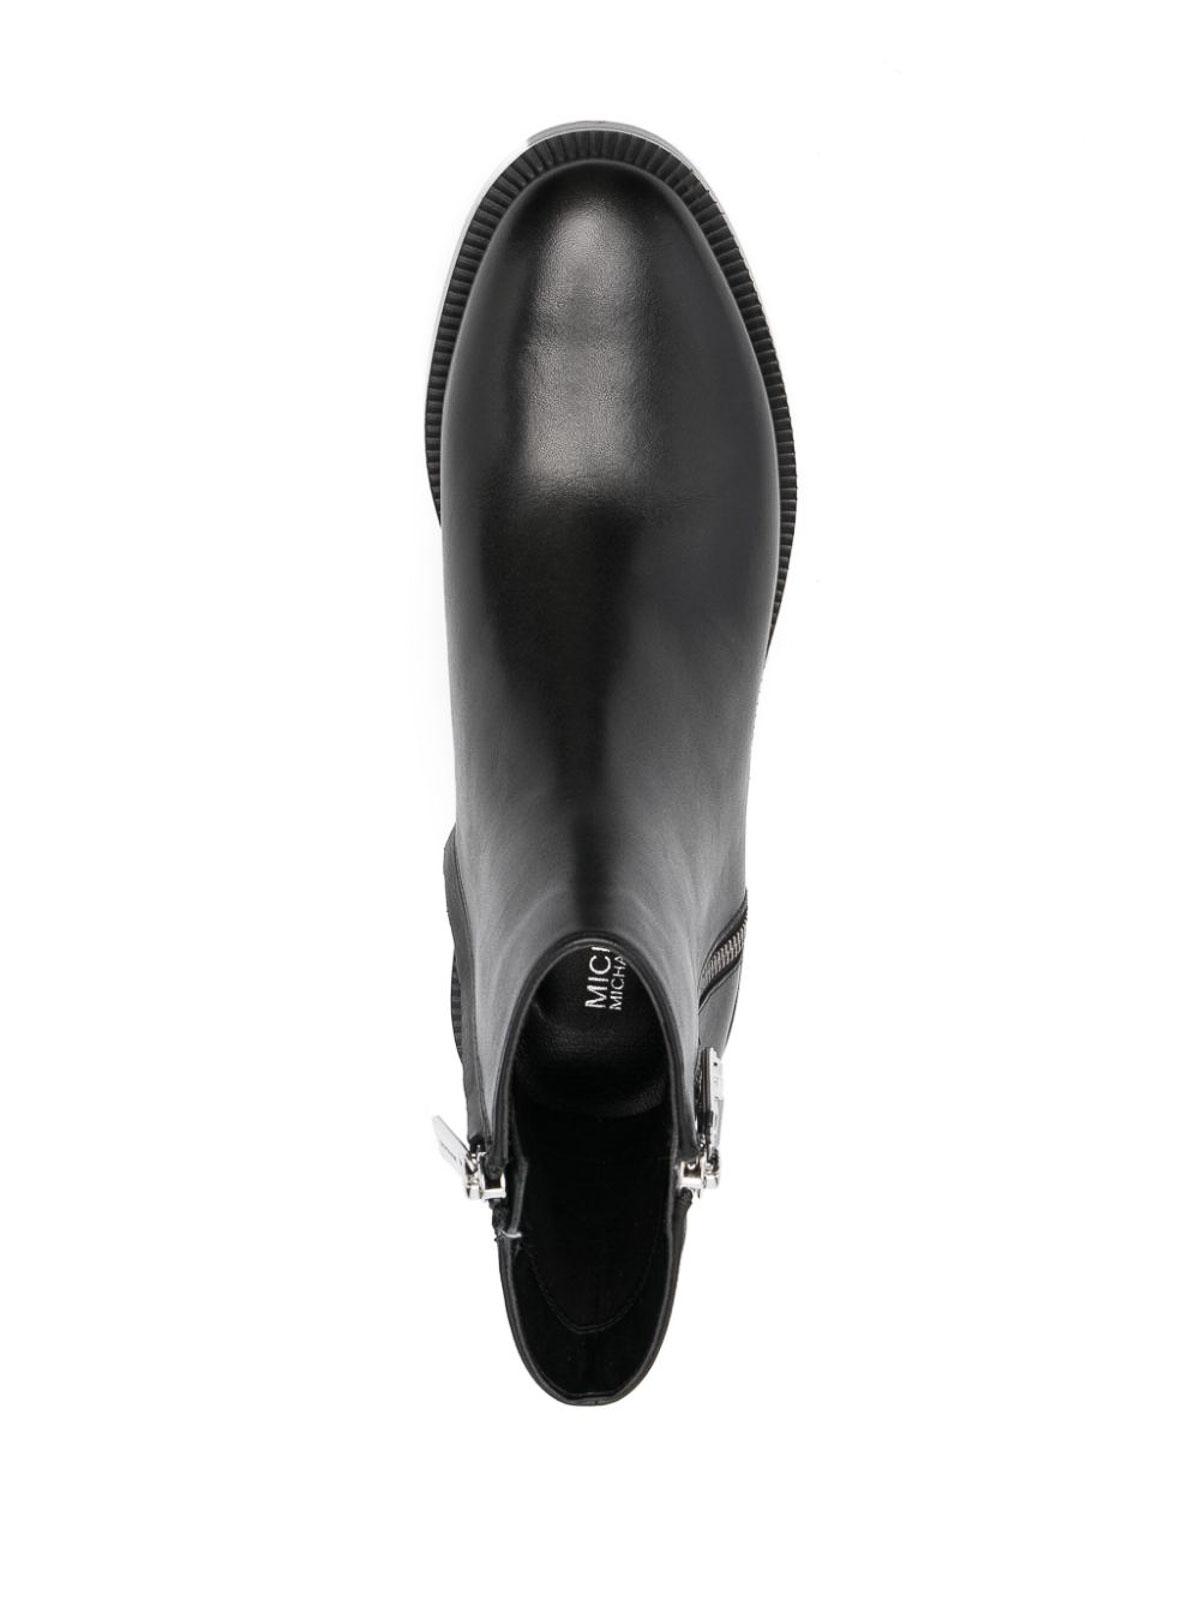 Shop Michael Kors Black Ankle Boots